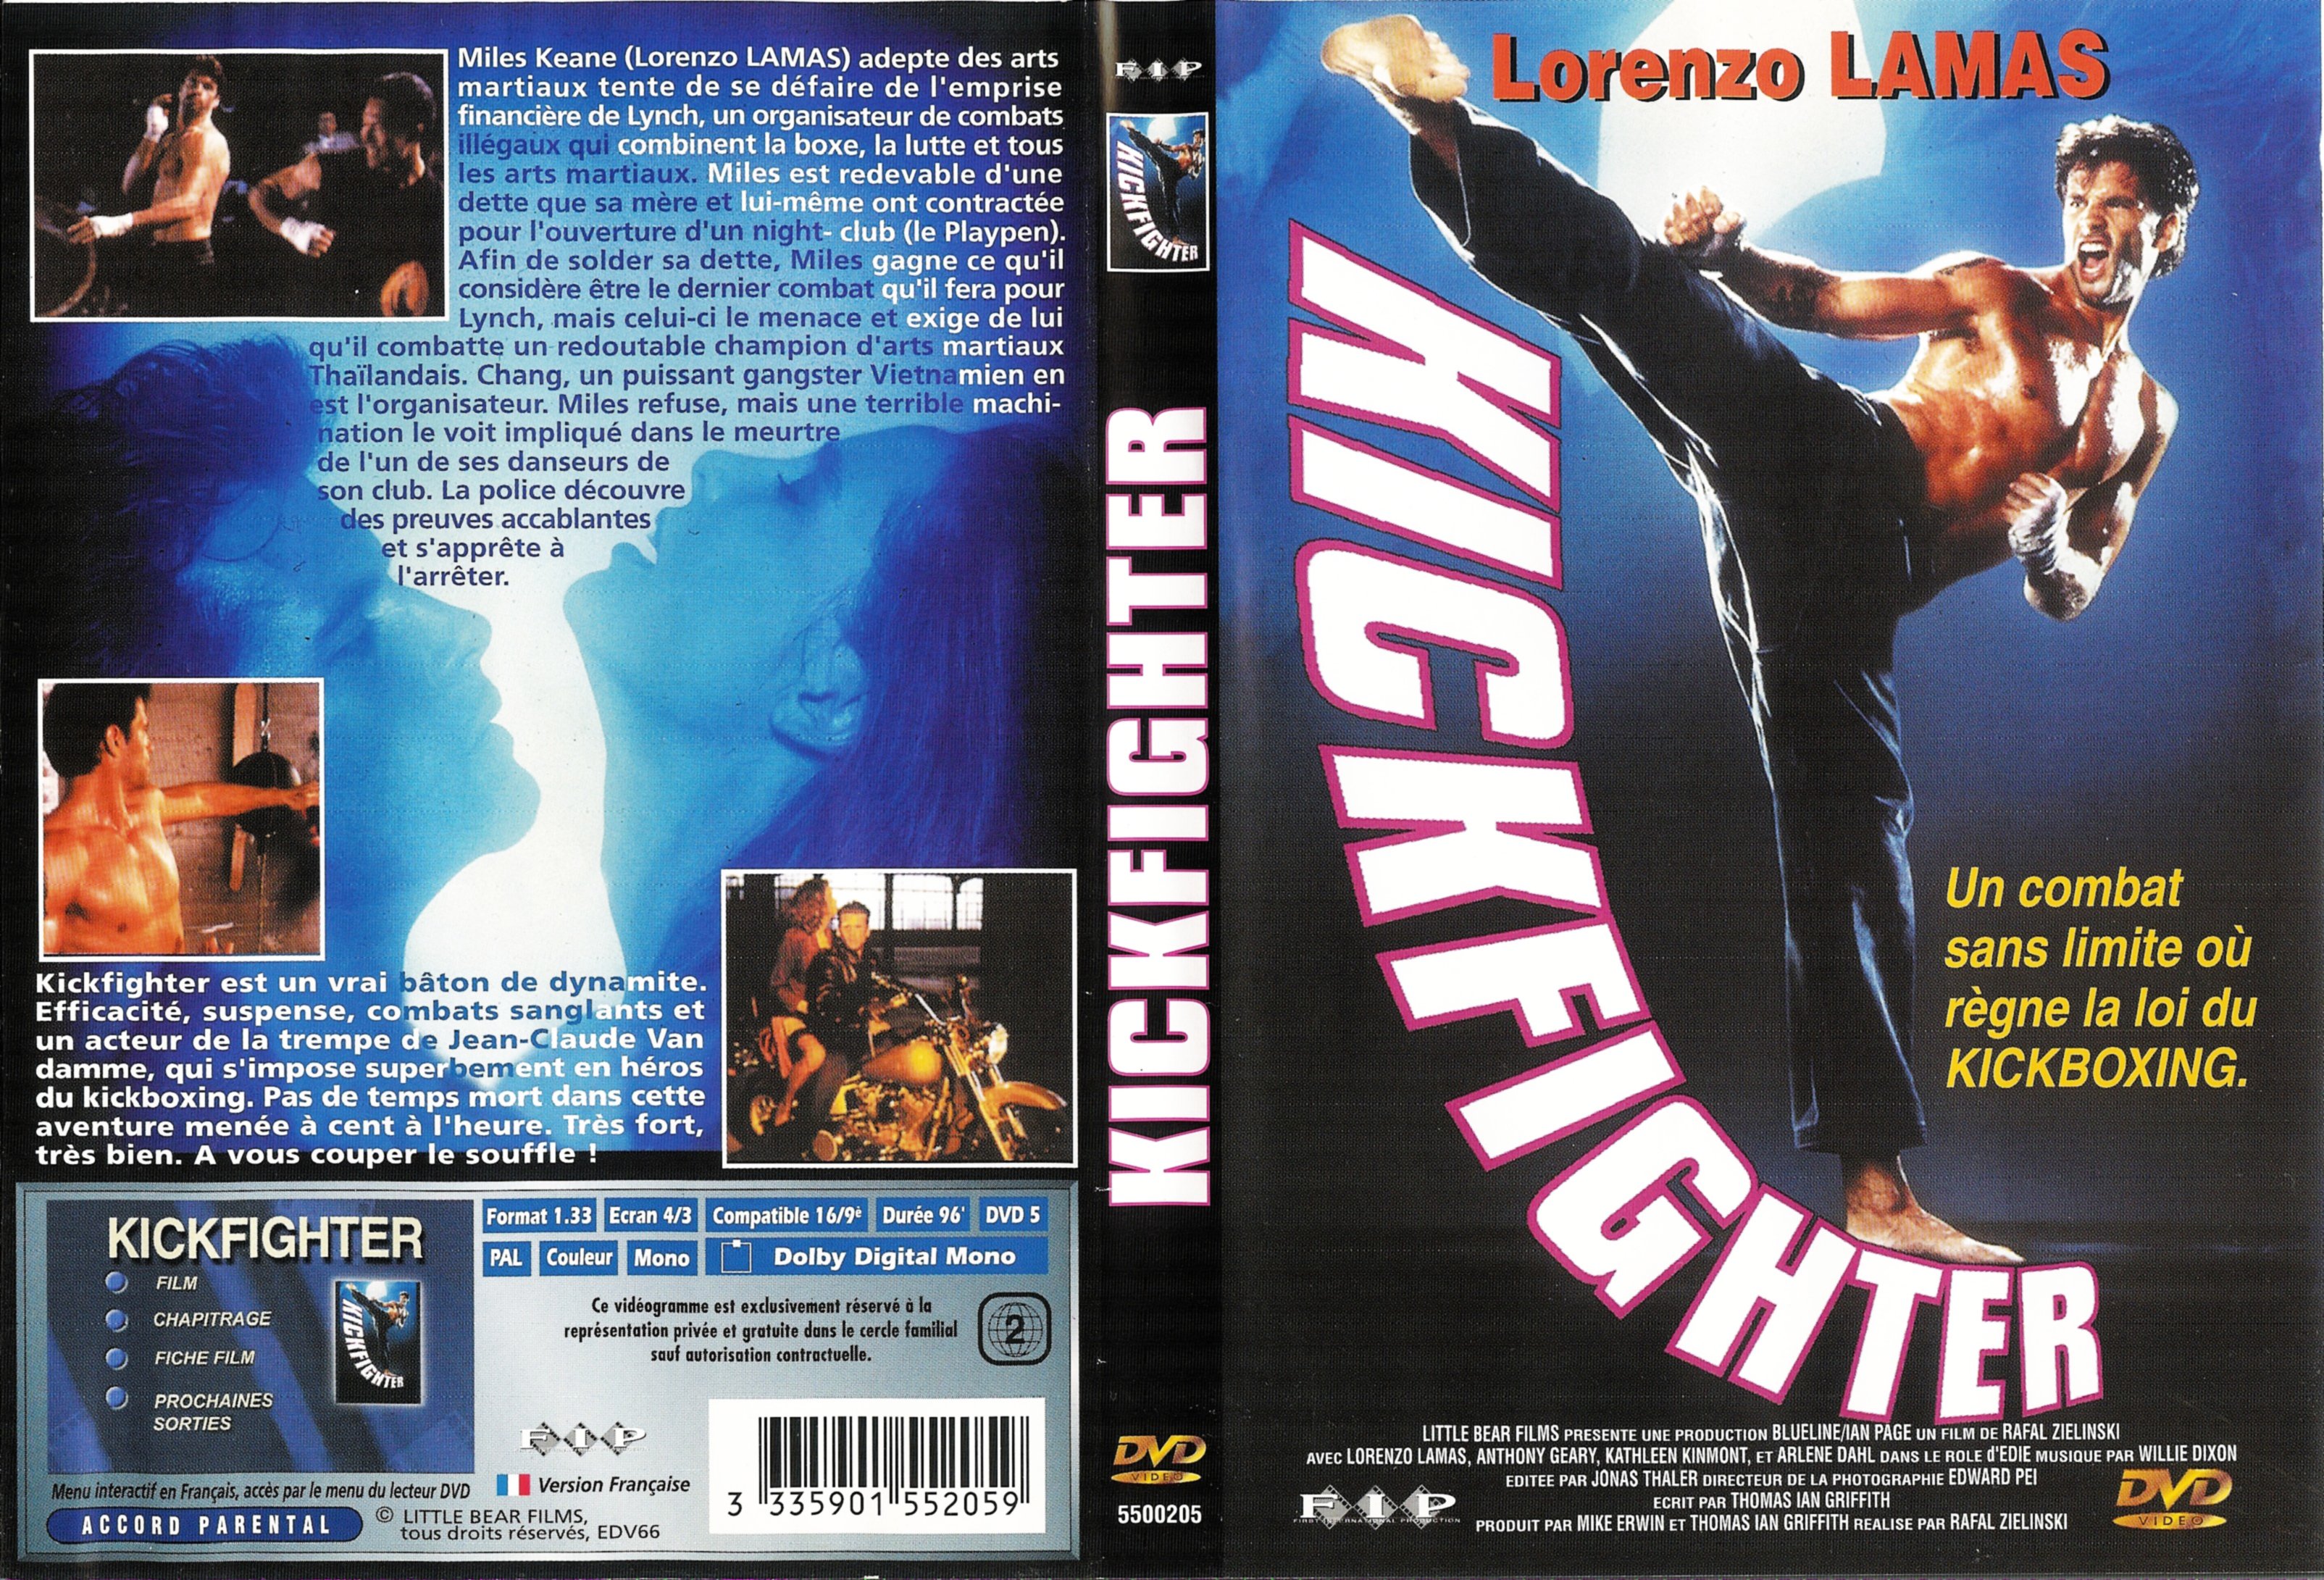 Jaquette DVD Kickfighter